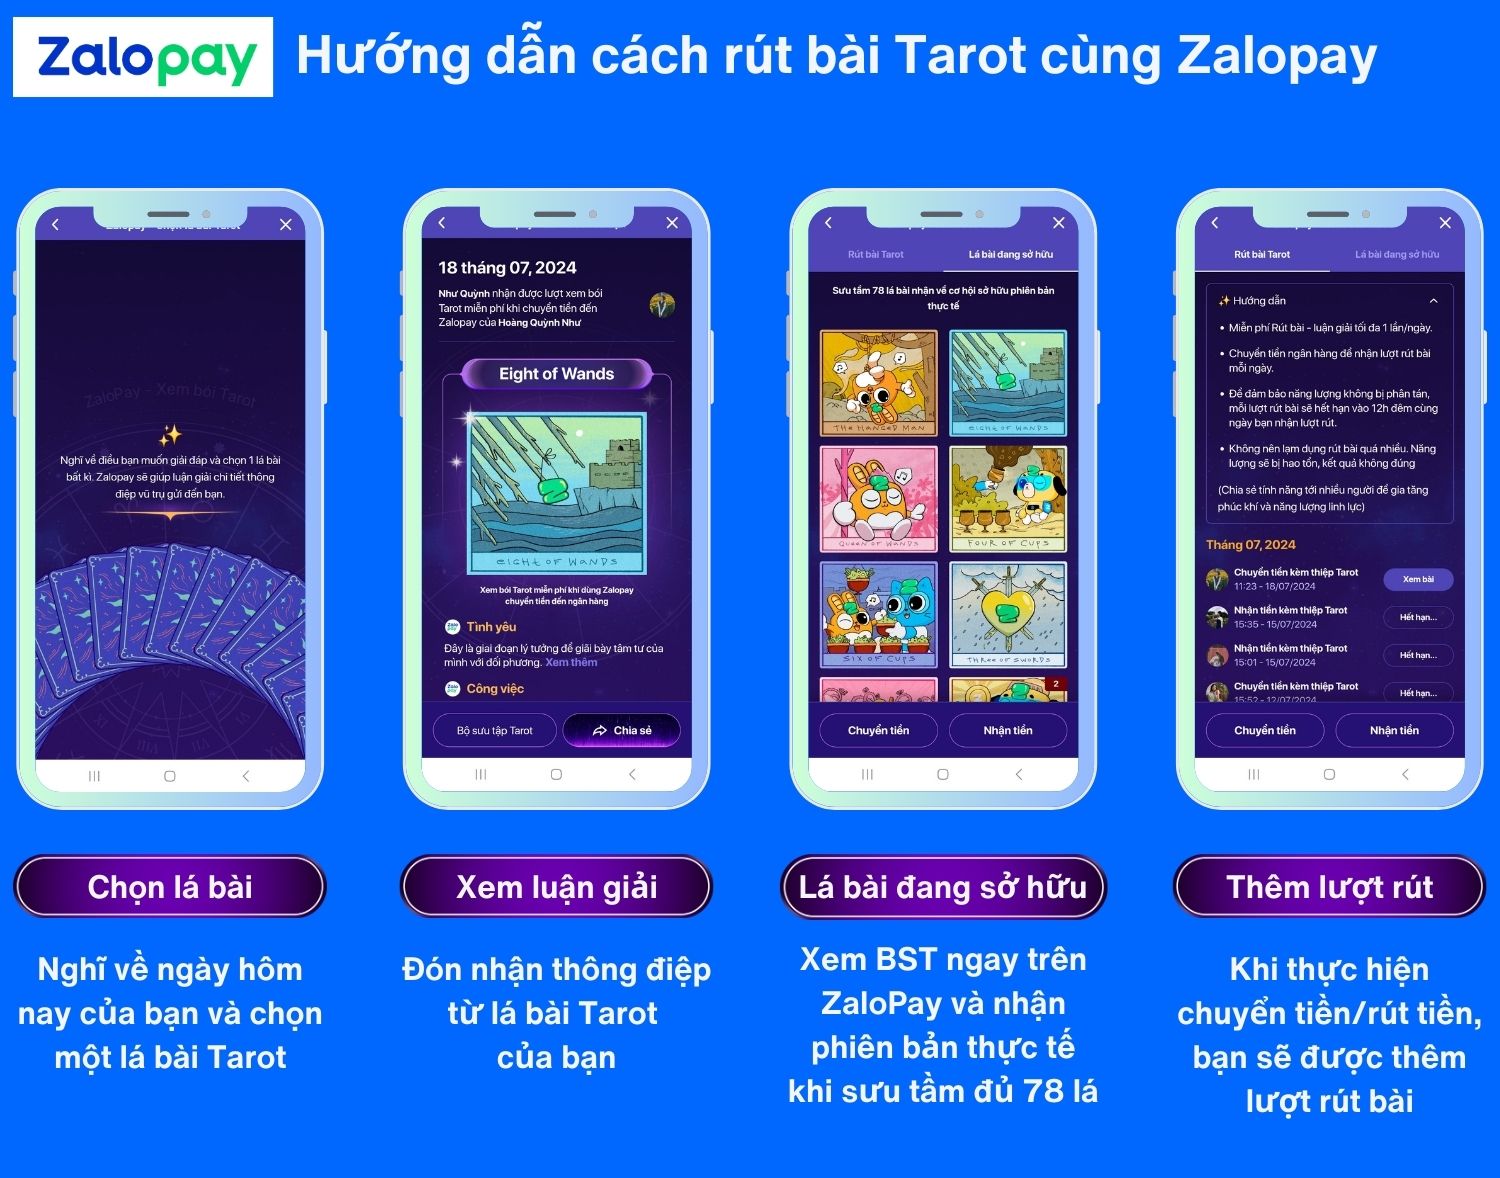 Hướng dẫn cách rút bài tarot sau khi thao tác chuyển tiền trên ZaloPay